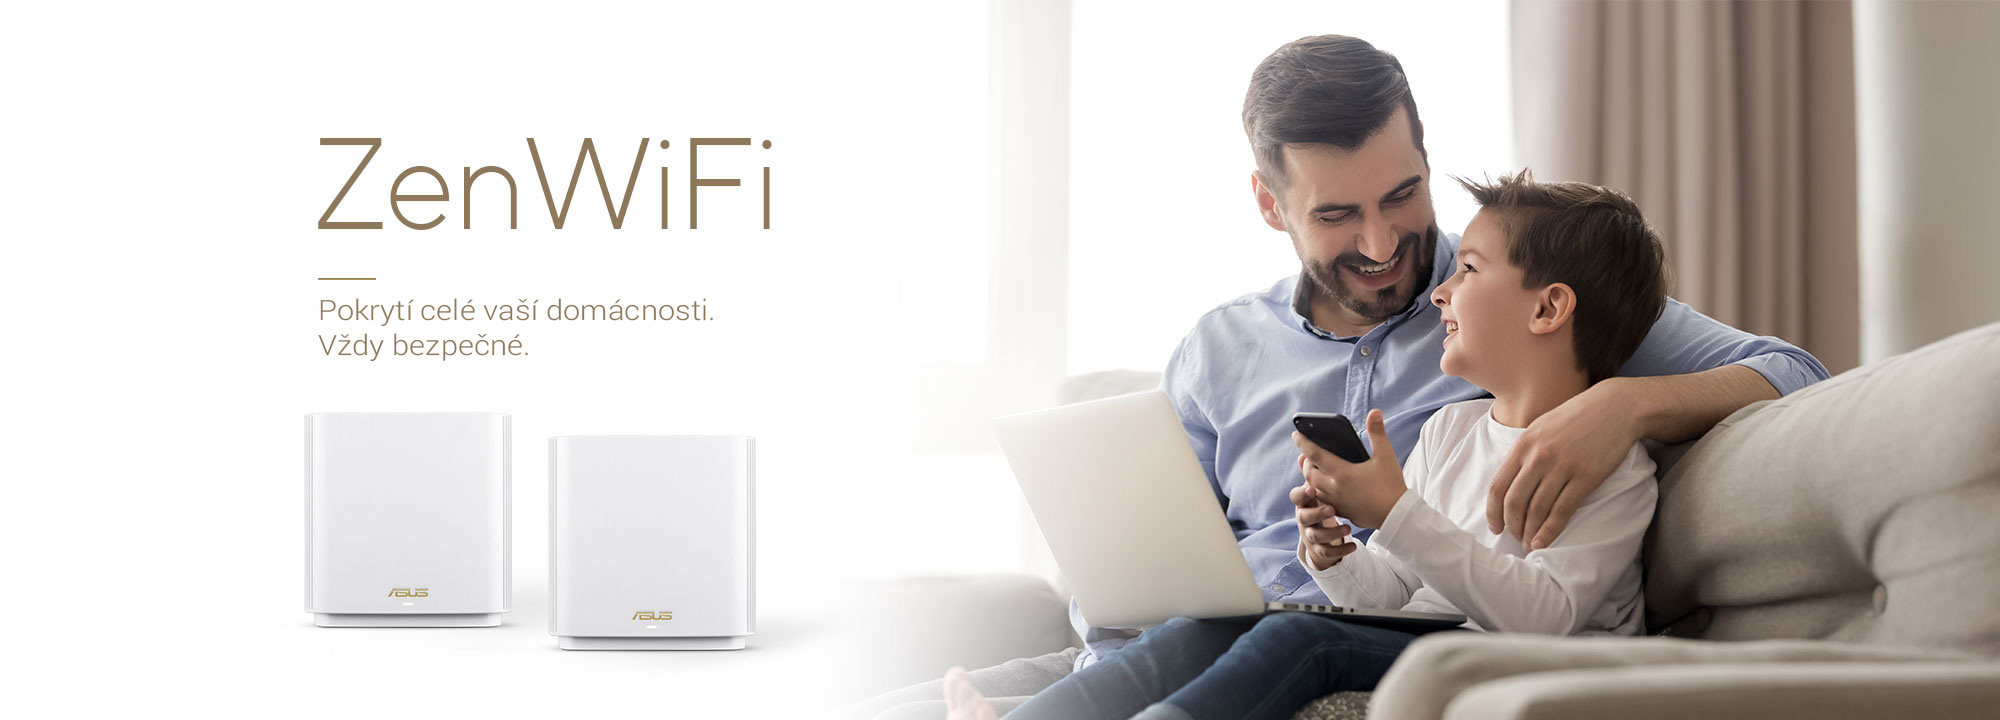 ASUS ZenWiFi je nejlepší domácí mesh WiFi systém, který poskytuje stabilní a rychlé WiFi připojení pro všechna vaše zařízení.